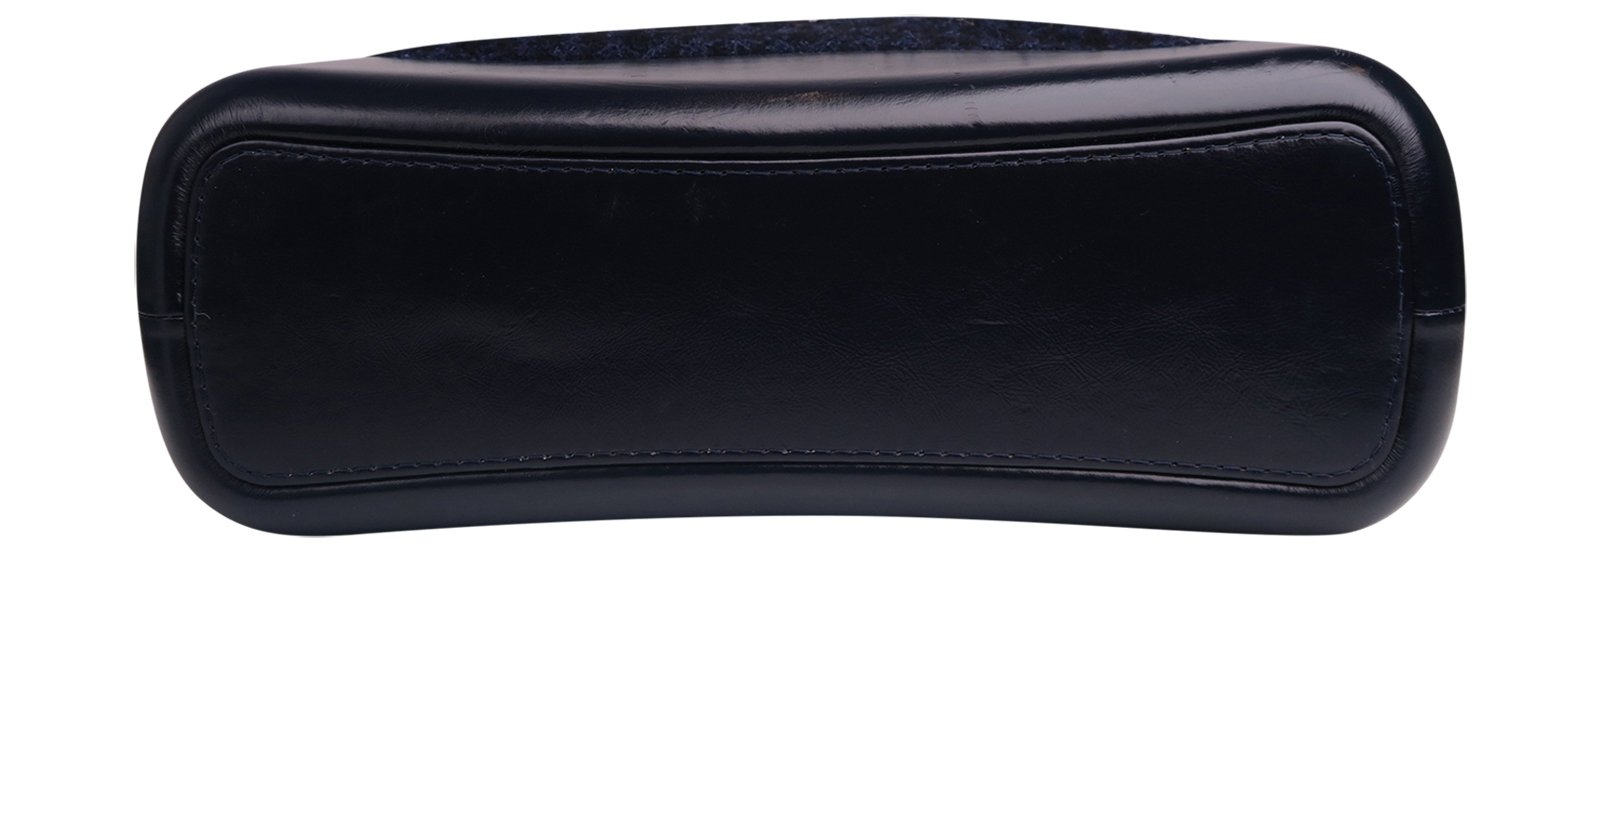 Chanel Gabrielle Bag – Beccas Bags